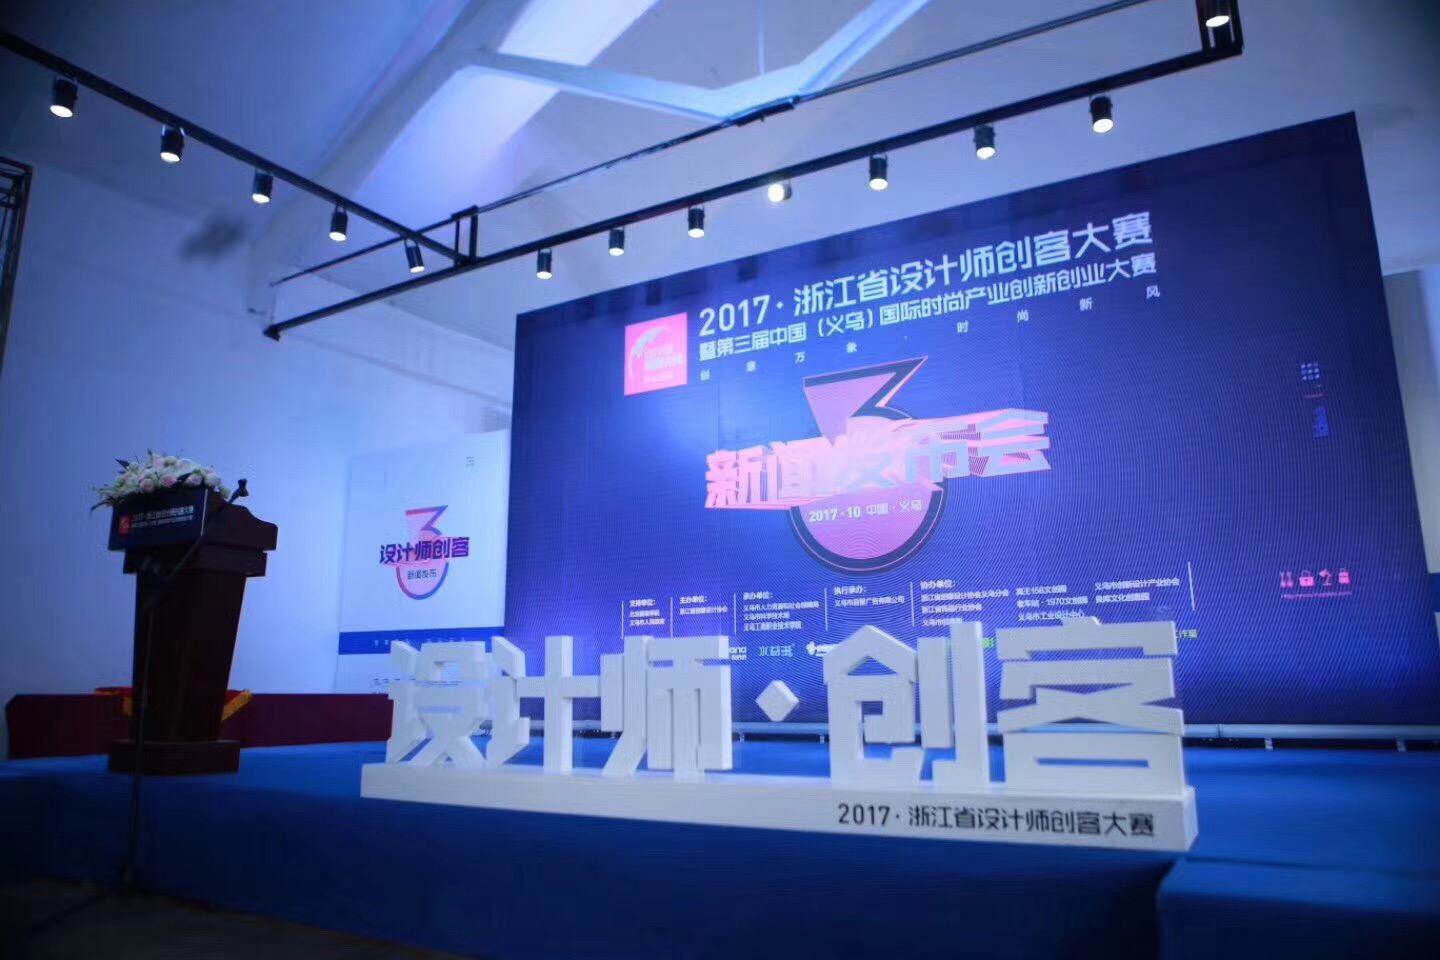 创意万象·时尚新风 2017浙江省设计师创客大赛于昨日正式启动